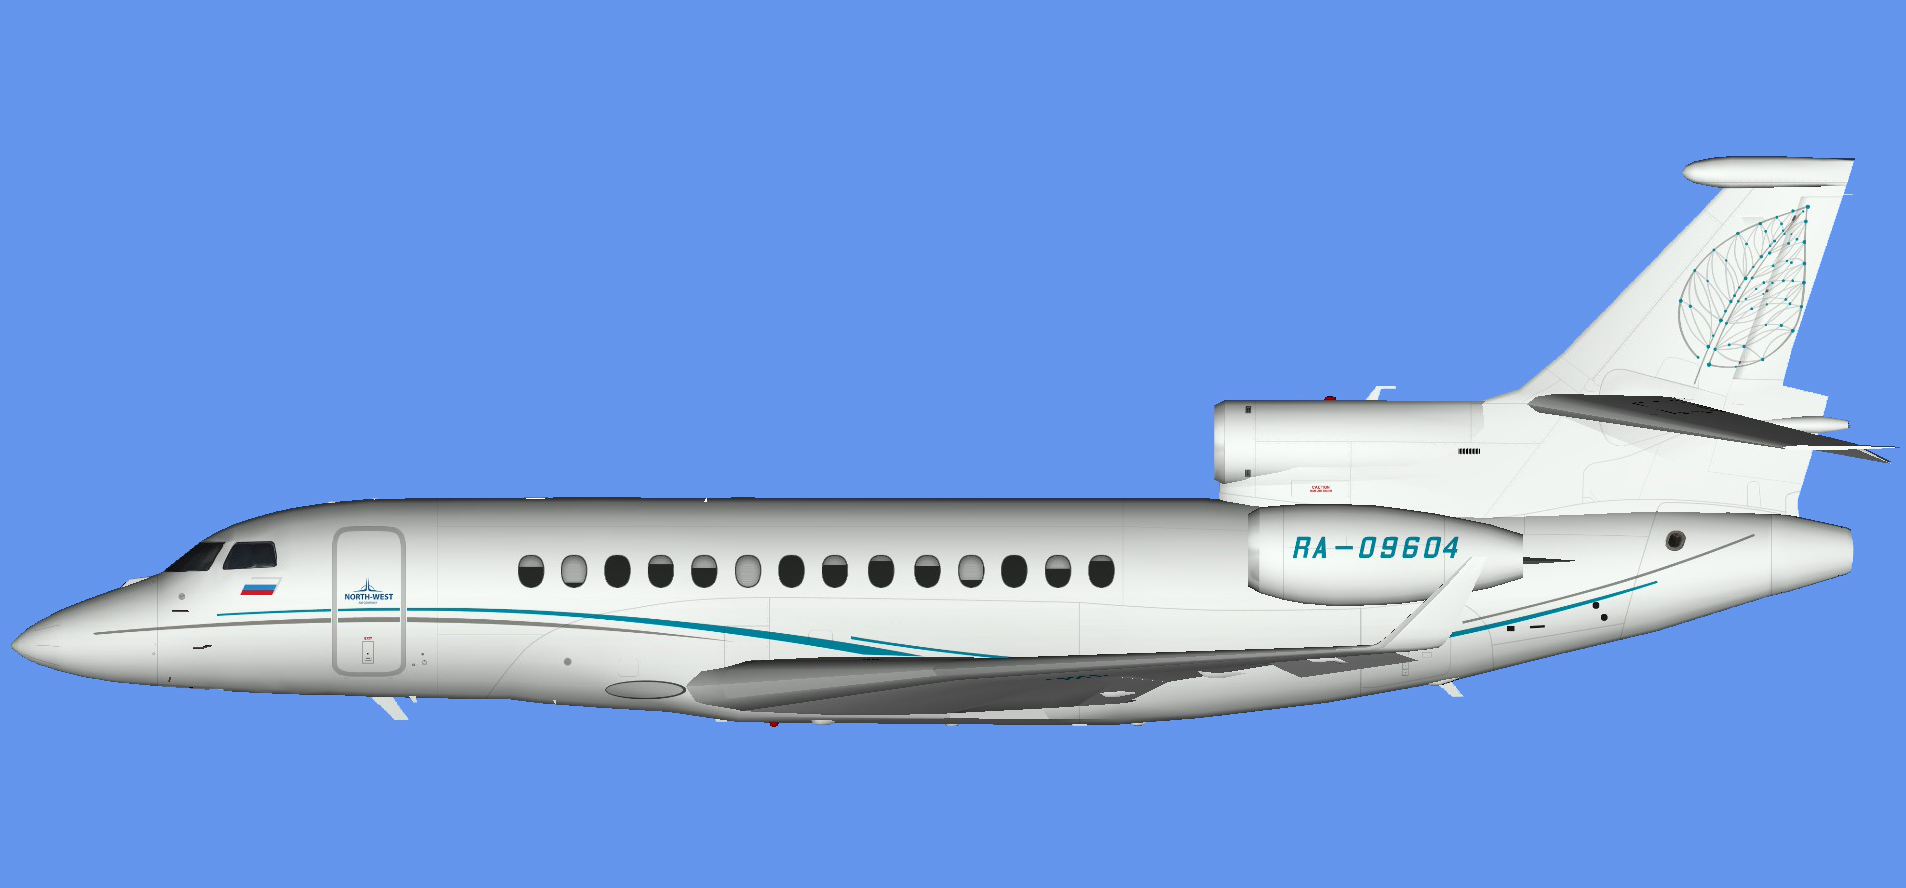 Dassault Falcon 7x RA-09604